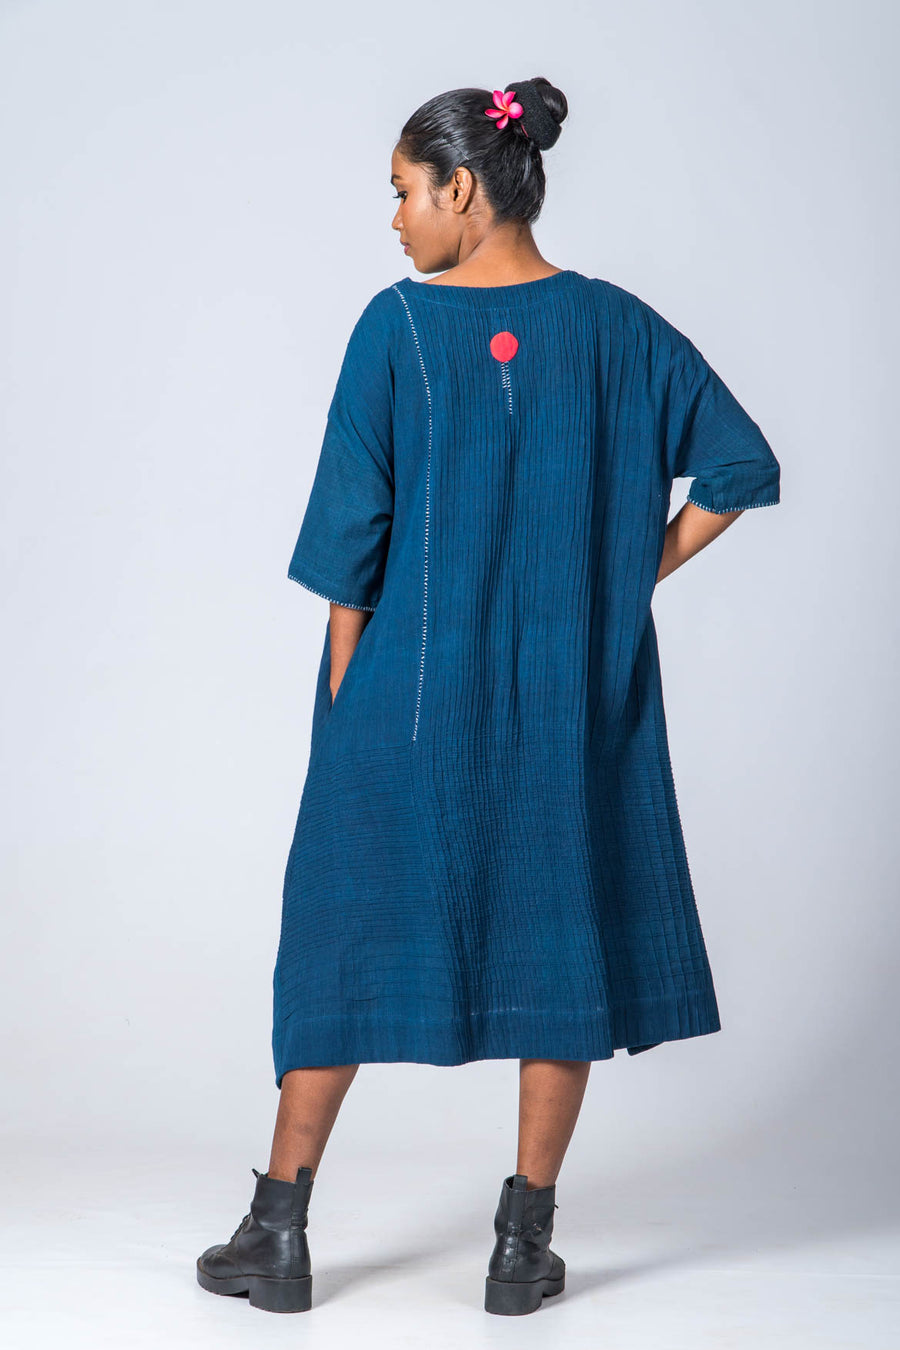 Natural Indigo Cotton Pintuck dress - KARL - Upasana Design Studio